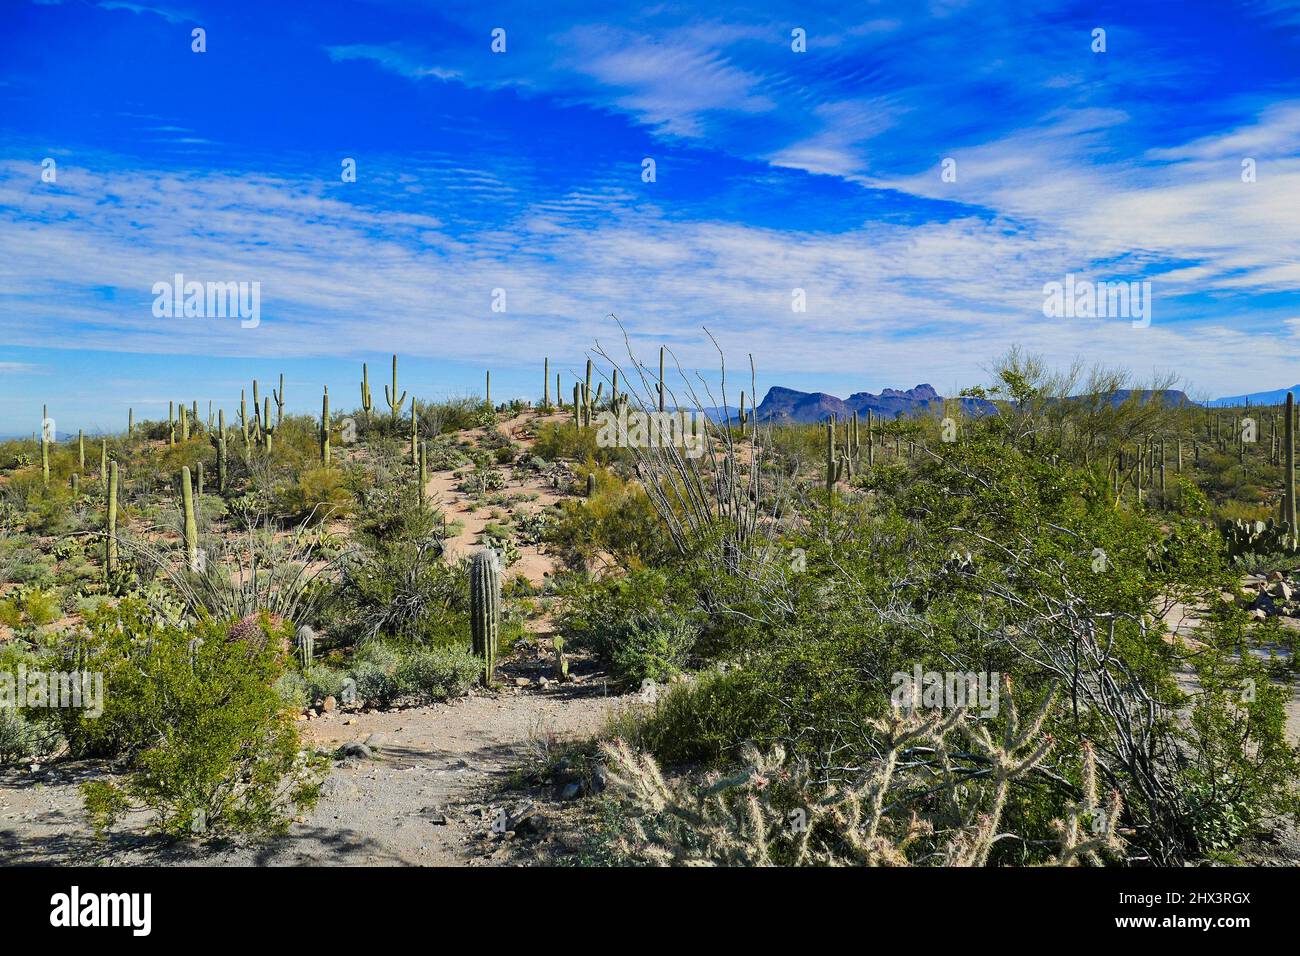 Le désert de Sonoran à signal Hill dans le parc national de Saguaro près de Tucson, Arizona, États-Unis. Saguaros, poires pickly et autres végétation désertique. Banque D'Images